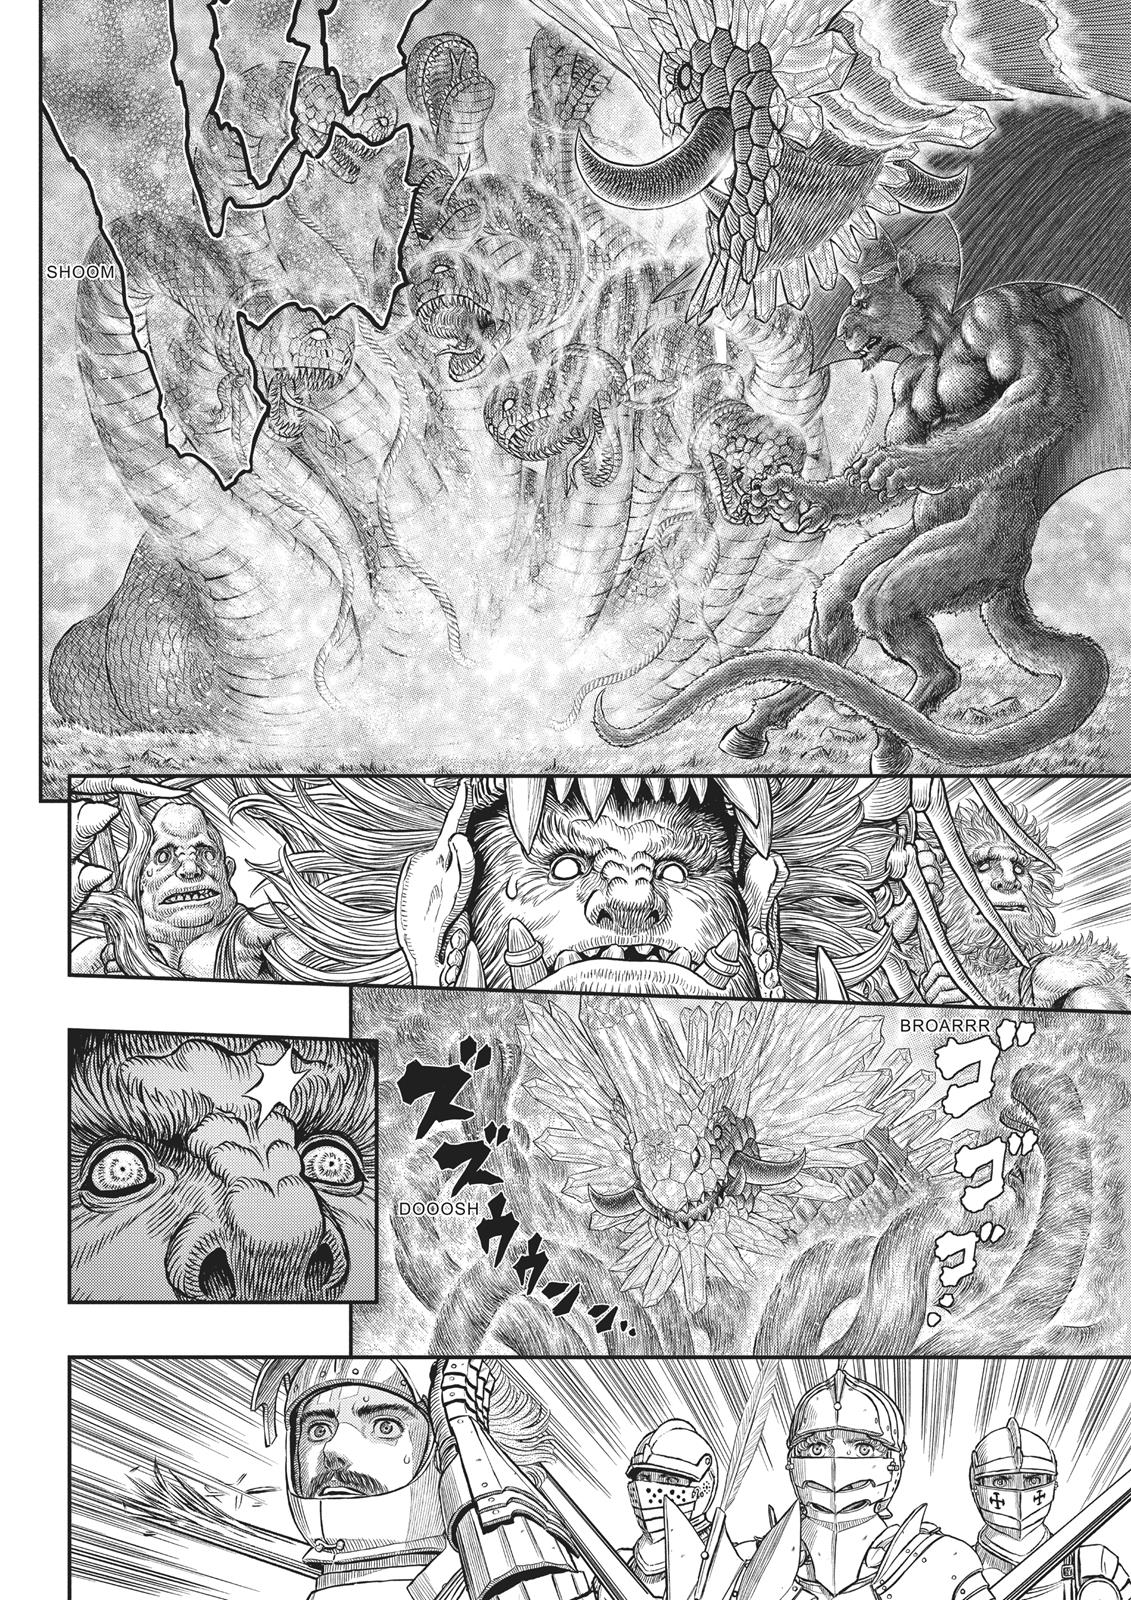 Berserk Manga Chapter 356 image 17